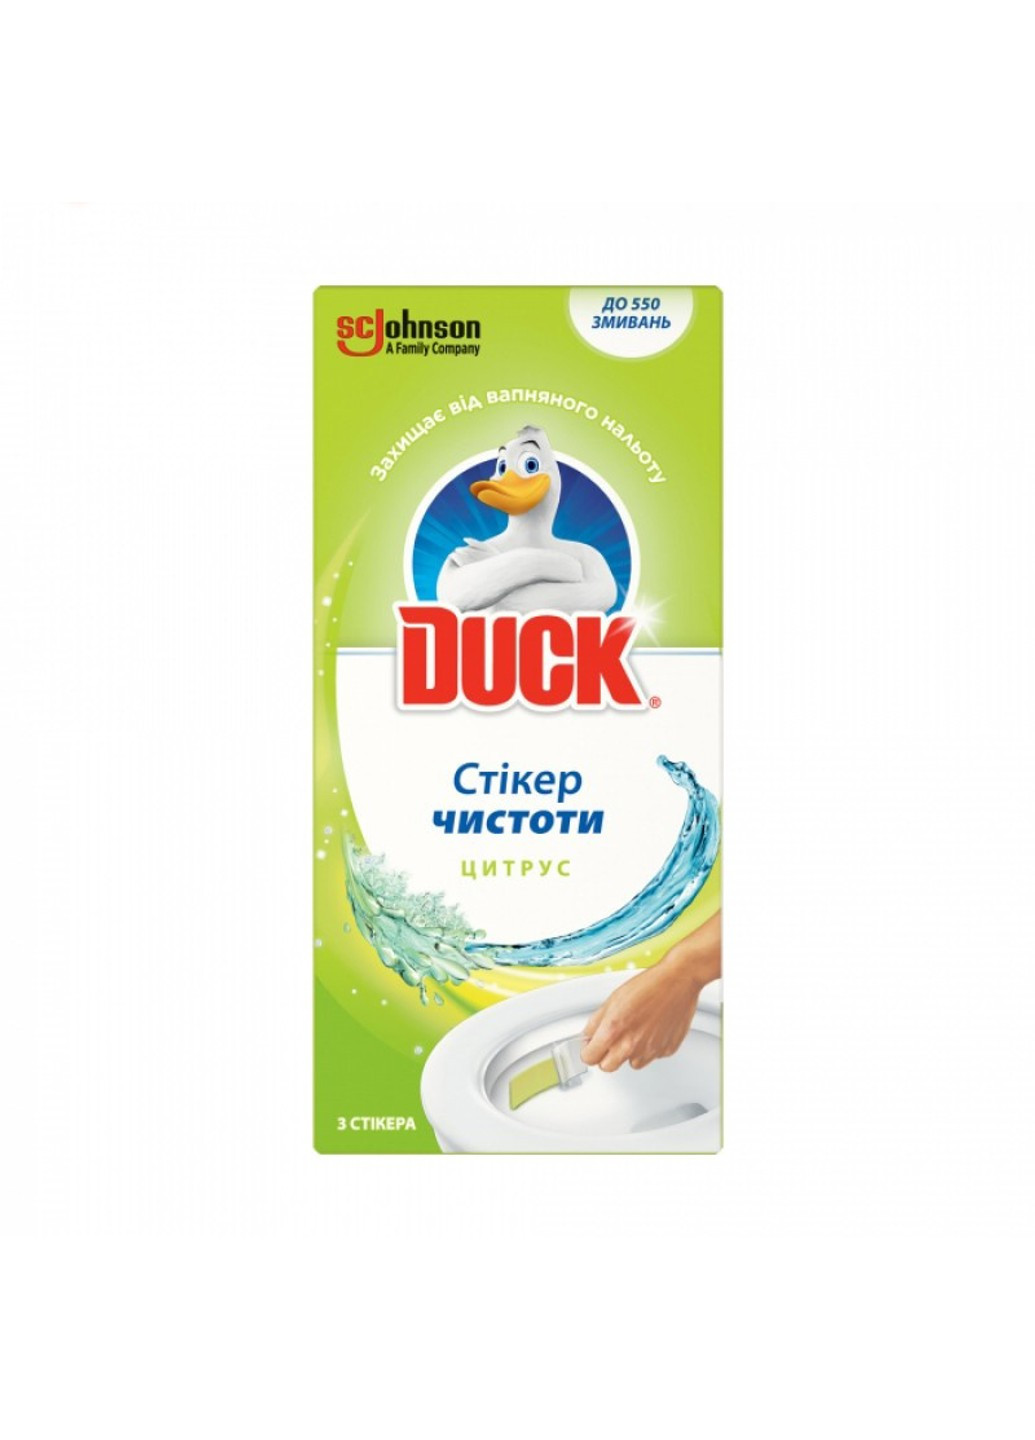 Утьонок стікер чистоти Цитрус 3 шт Duck (272790516)